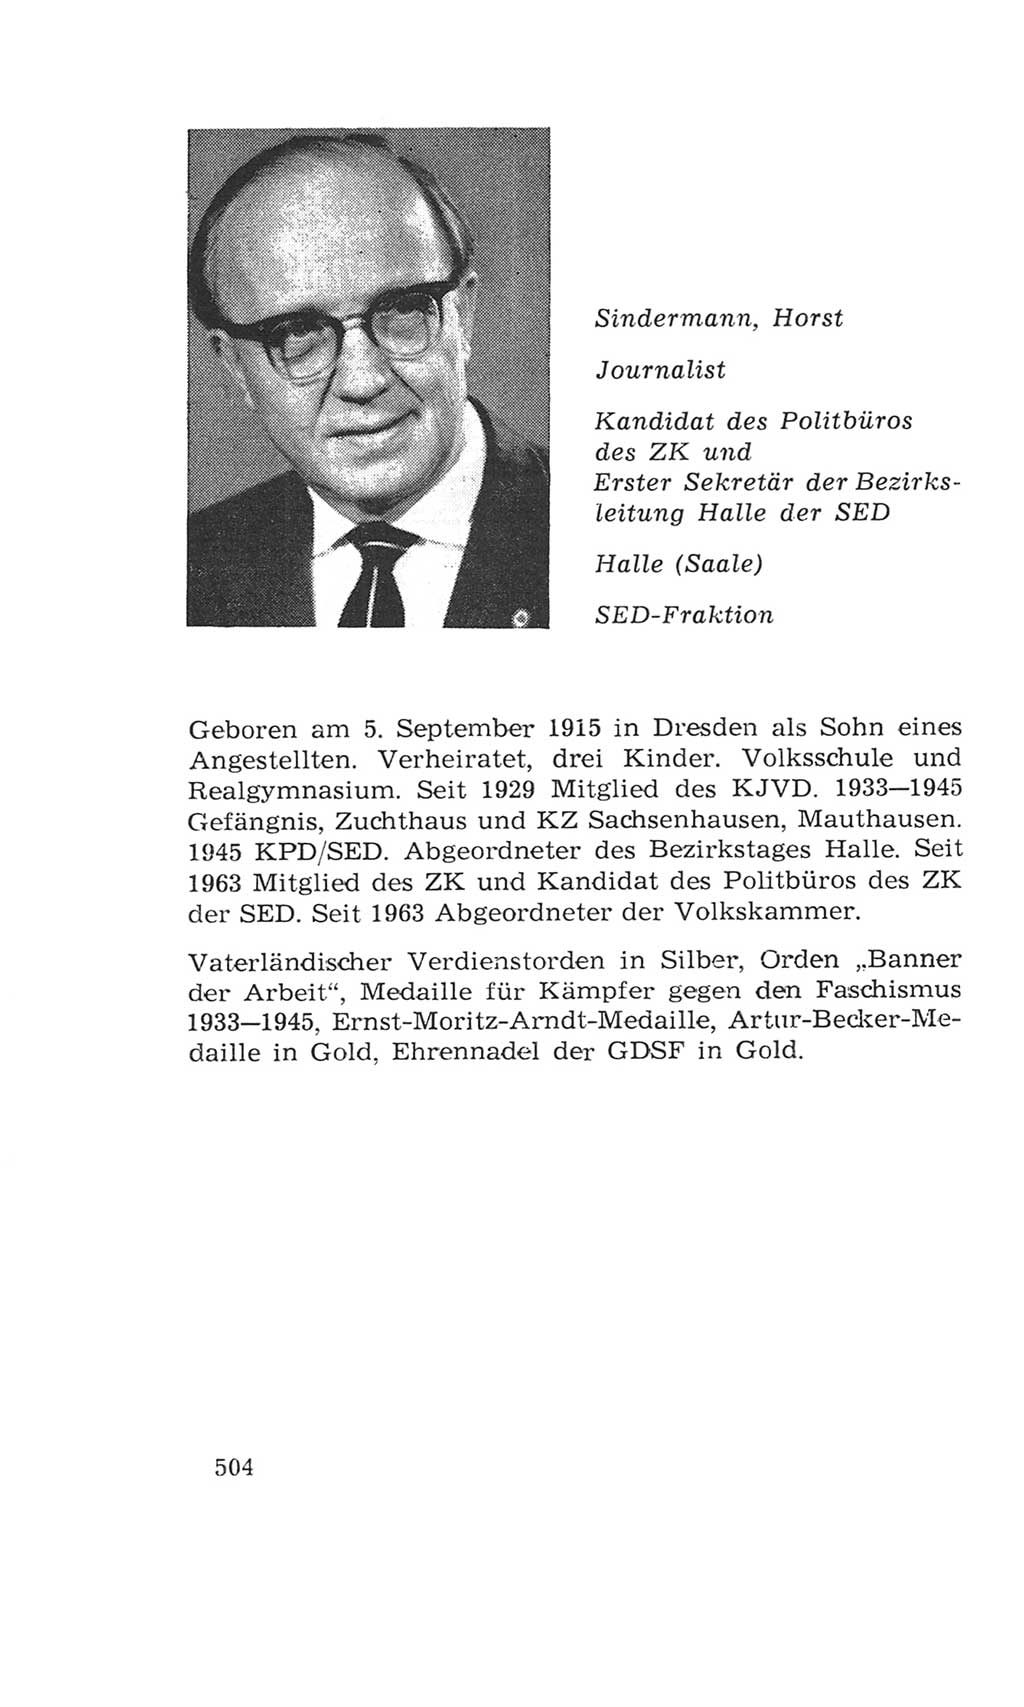 Volkskammer (VK) der Deutschen Demokratischen Republik (DDR), 4. Wahlperiode 1963-1967, Seite 504 (VK. DDR 4. WP. 1963-1967, S. 504)